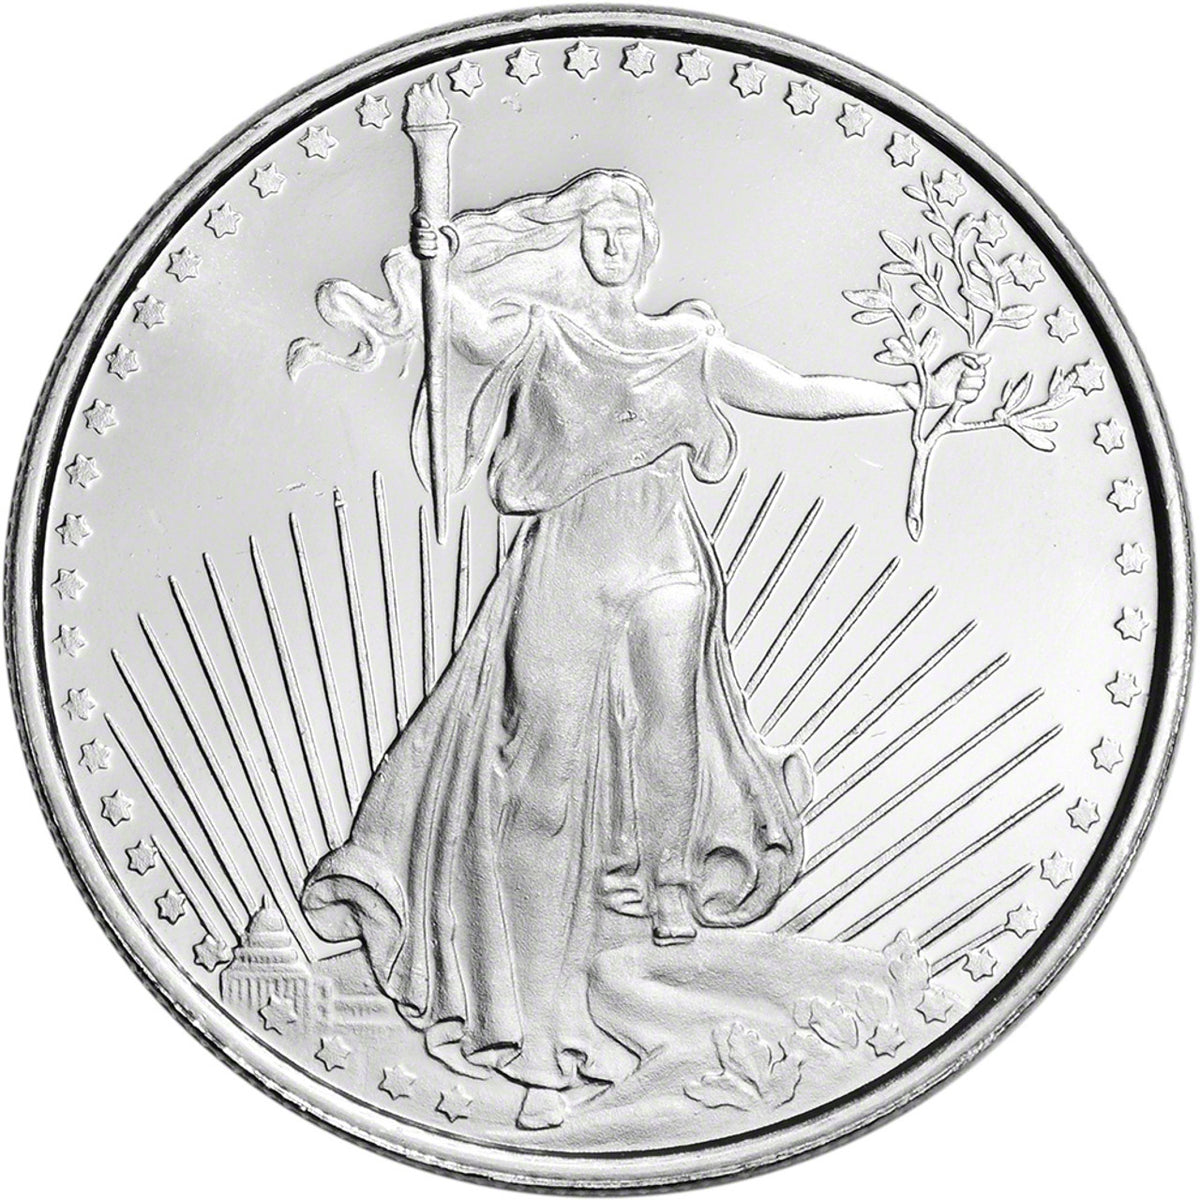 Highland Mint Saint Gaudens 1 oz Silver Round